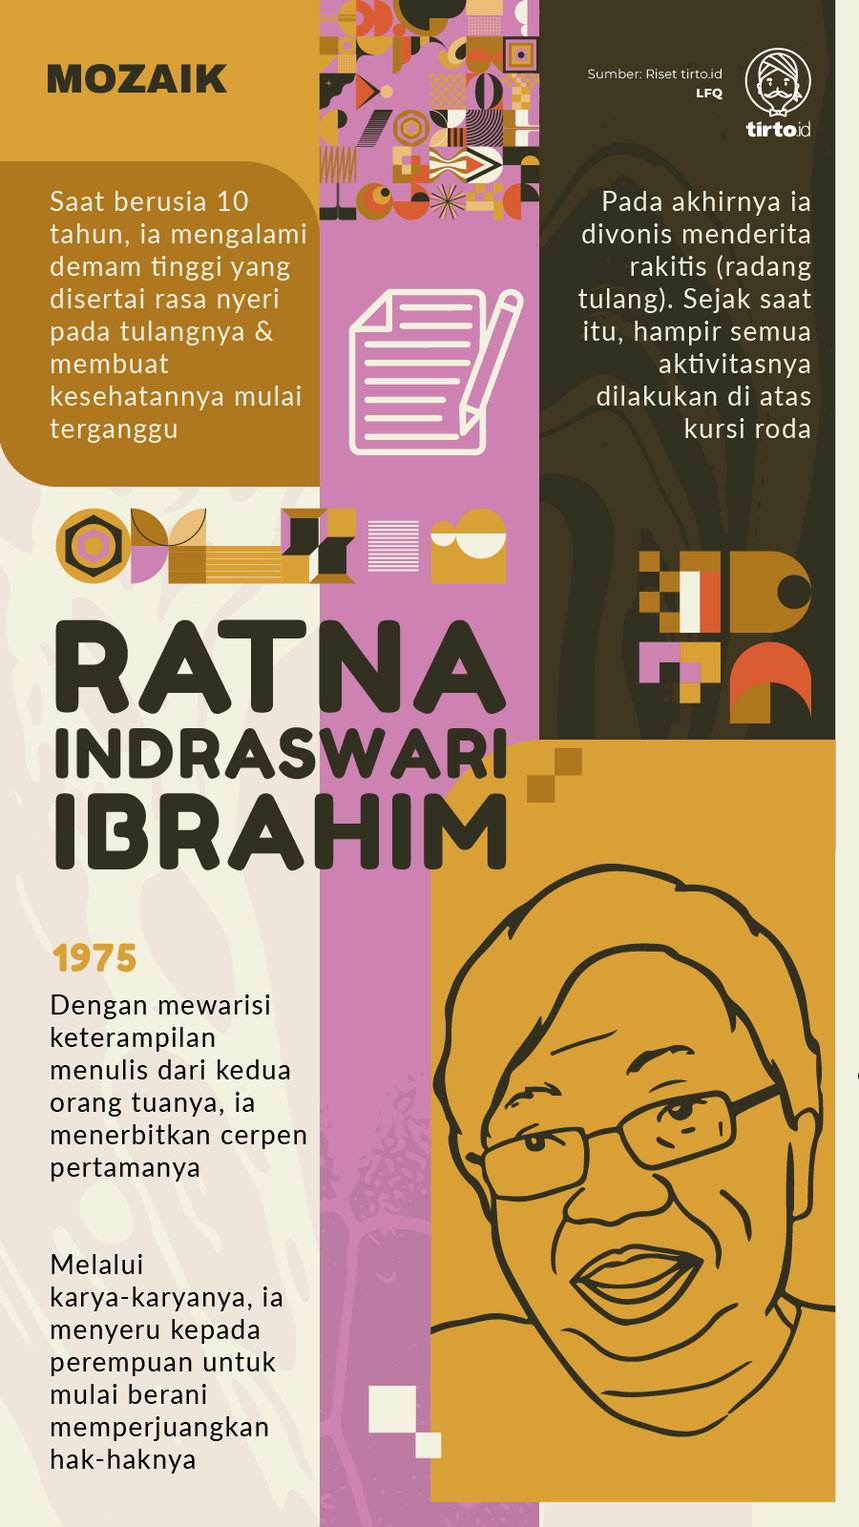 Infografik Mozaik Ratna Indraswari Ibrahim